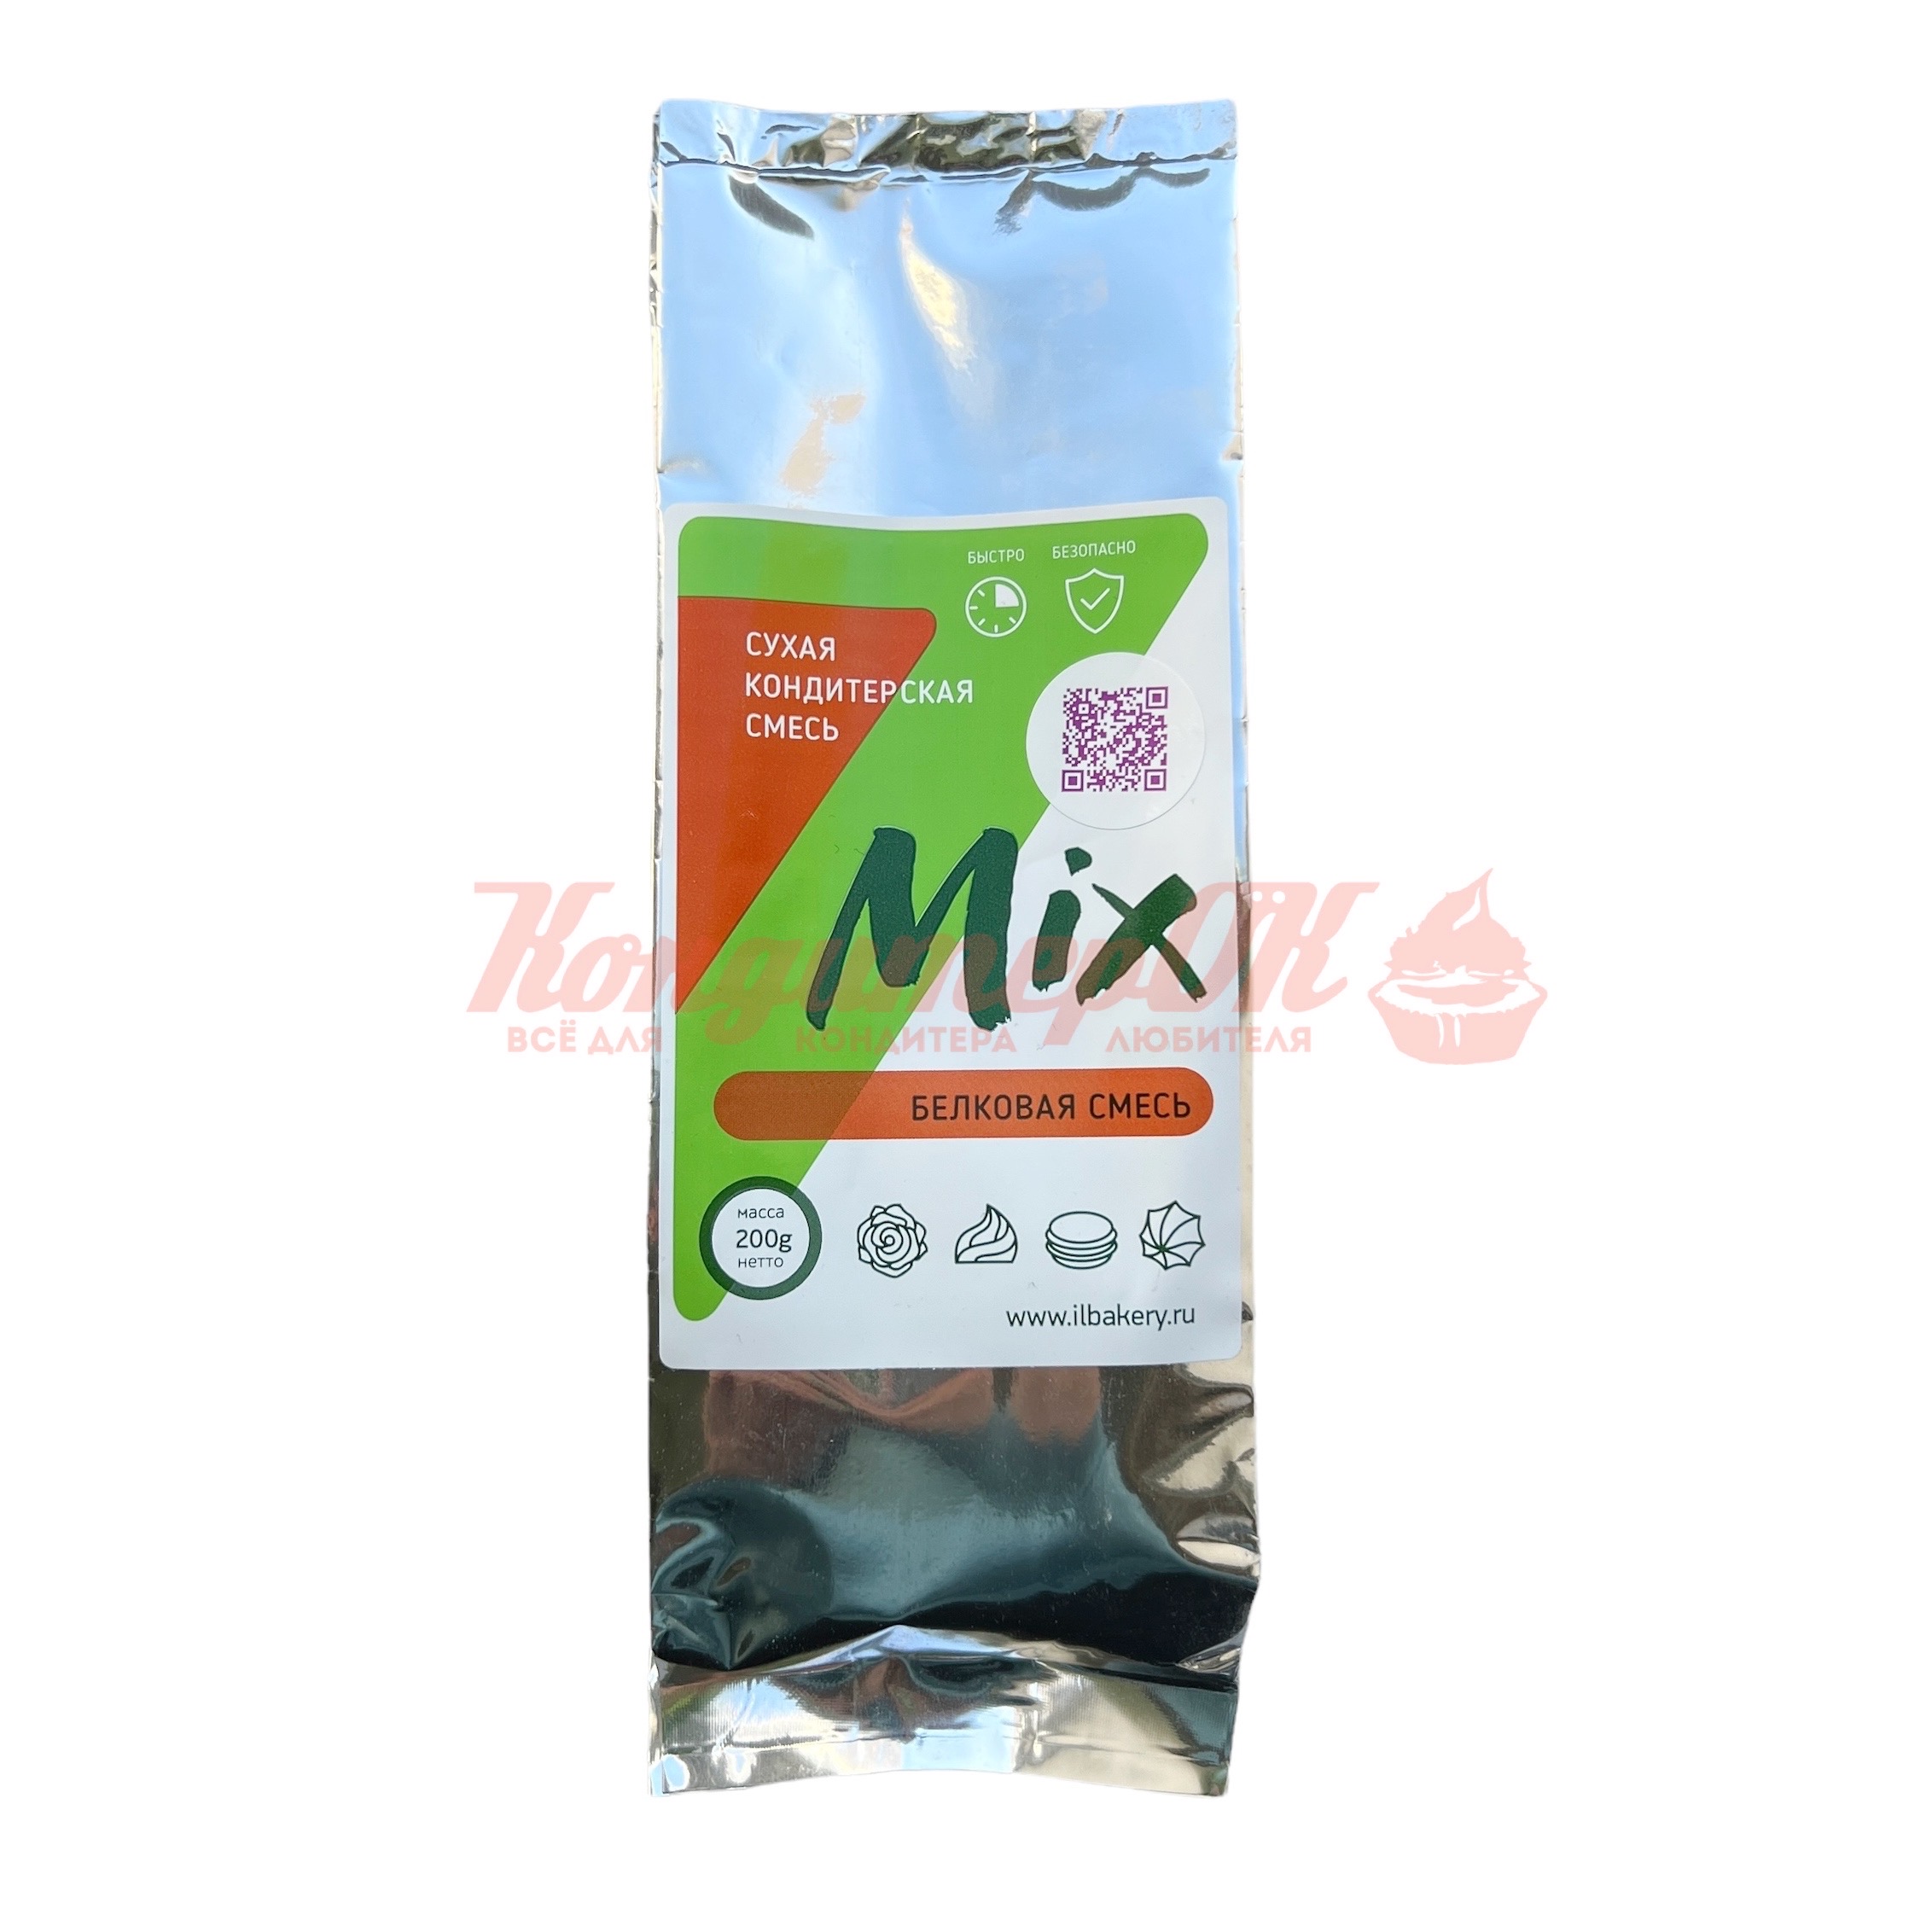 IL - mix (белковая смесь) 200 г